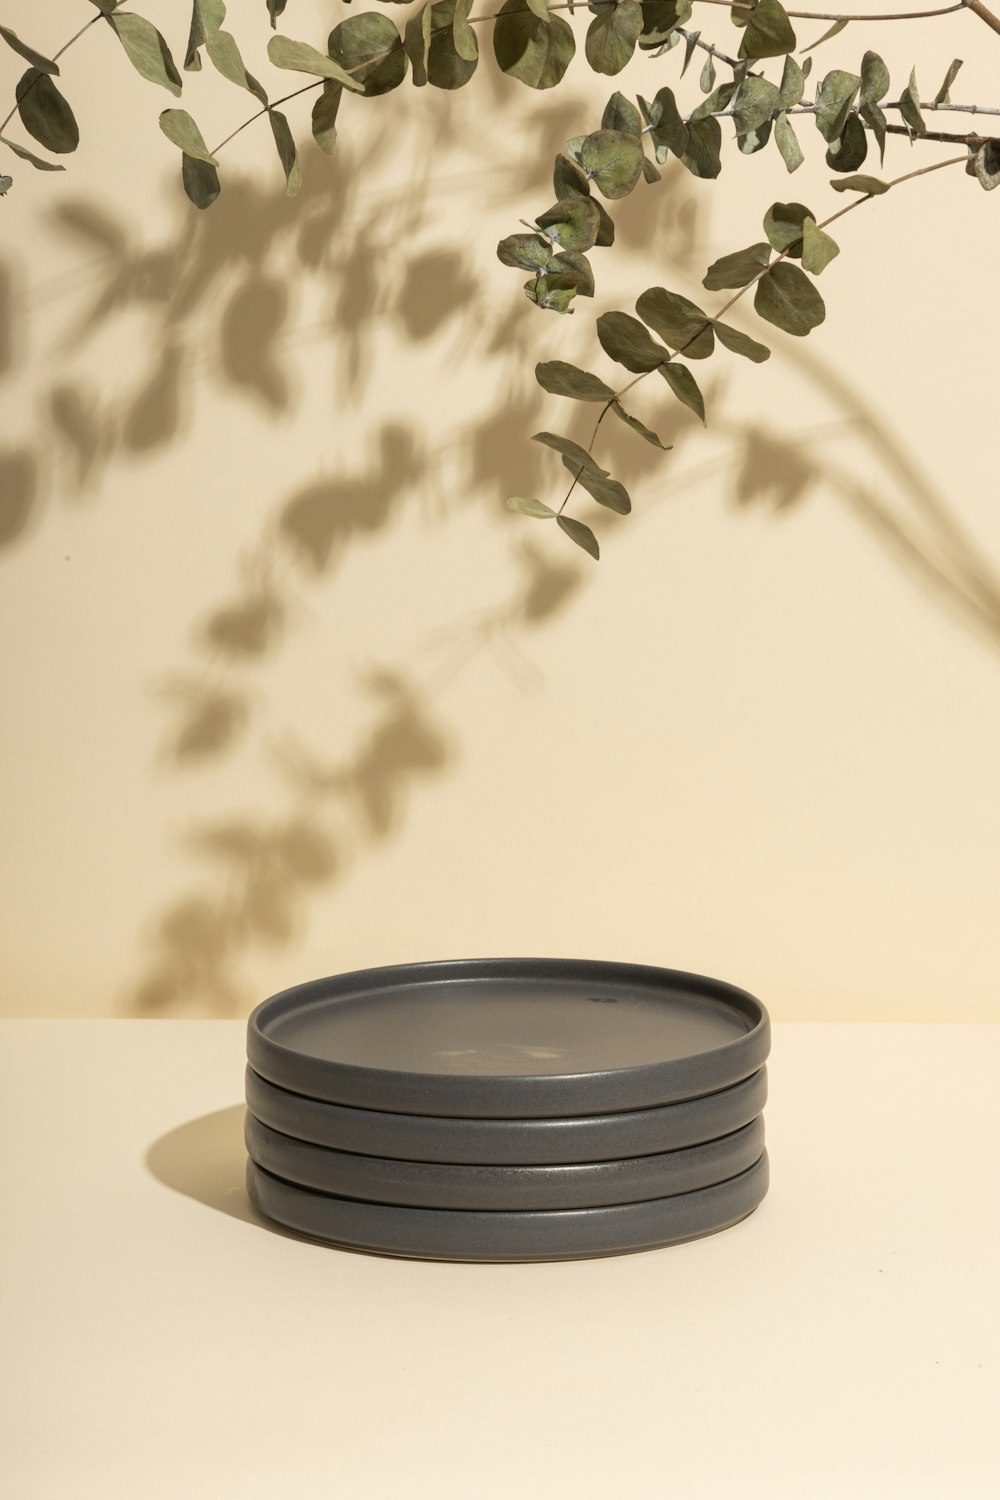 白い陶器の鉢に緑の植物